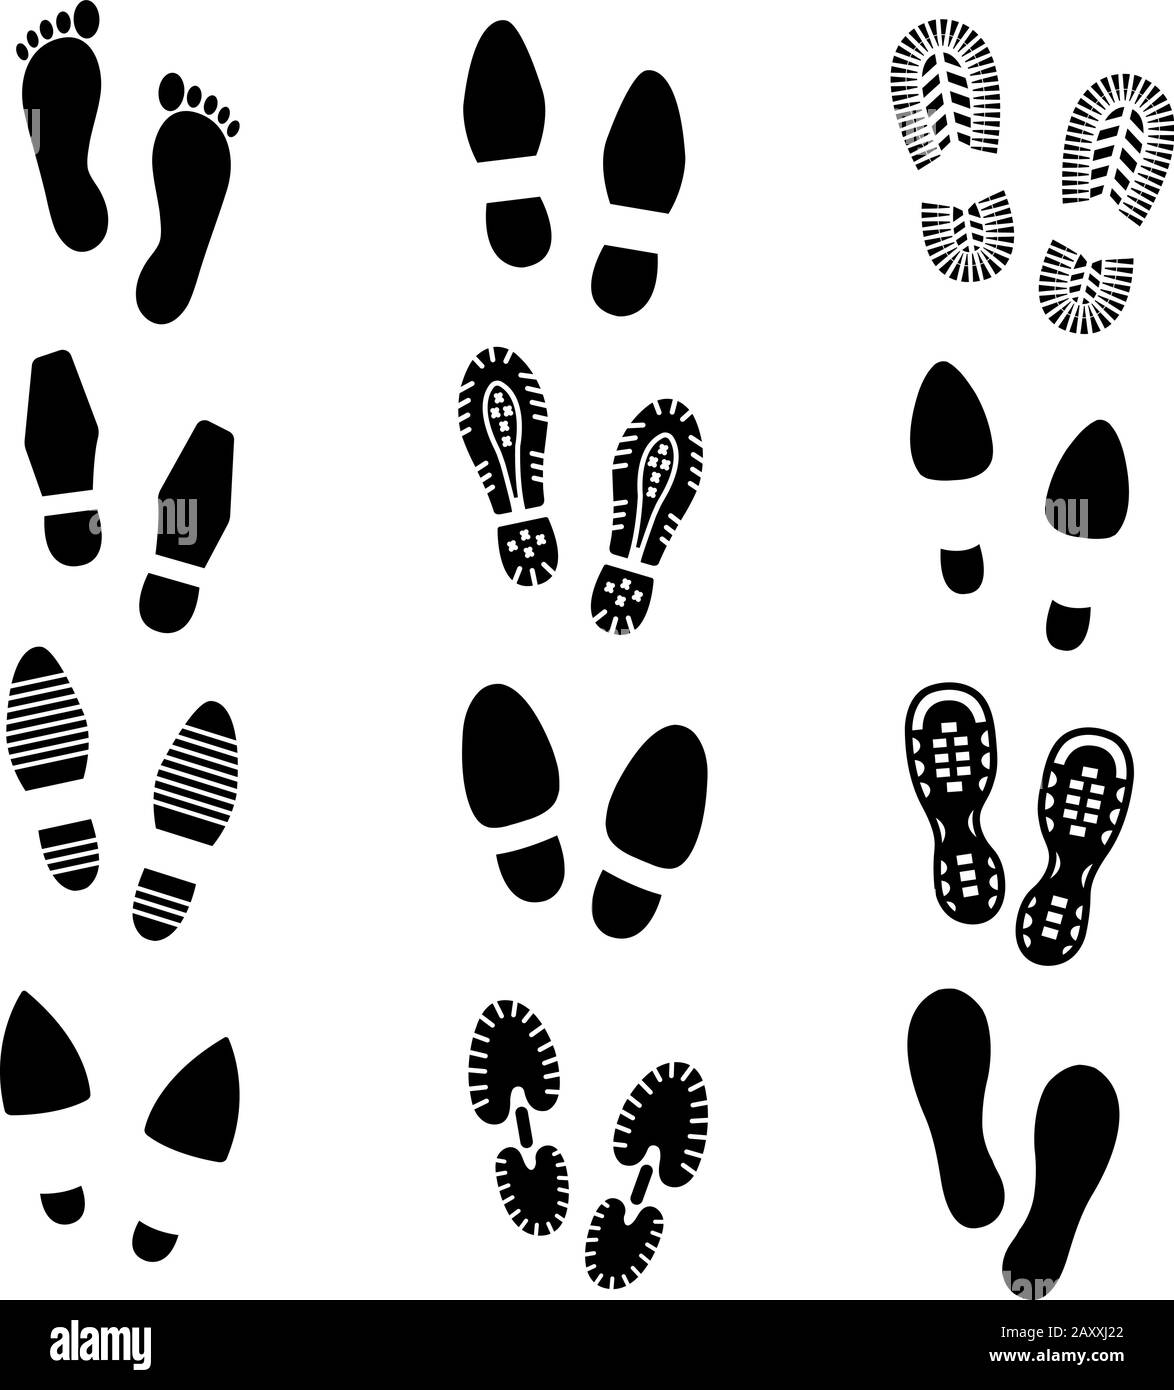 Les empreintes et les chaussures de bas de page vectorielles silhouette sont définies. Imprimé chaussures, semelle de chaussure, illustration de chaussures à encombrement réduit Illustration de Vecteur